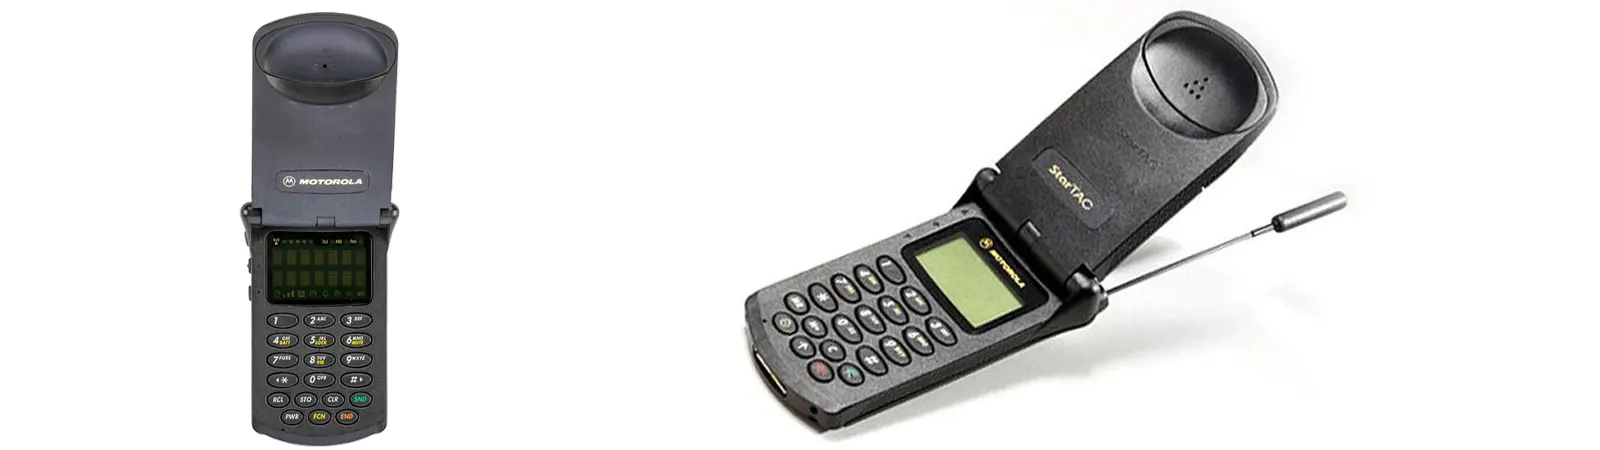 Motorola Startac (1996)